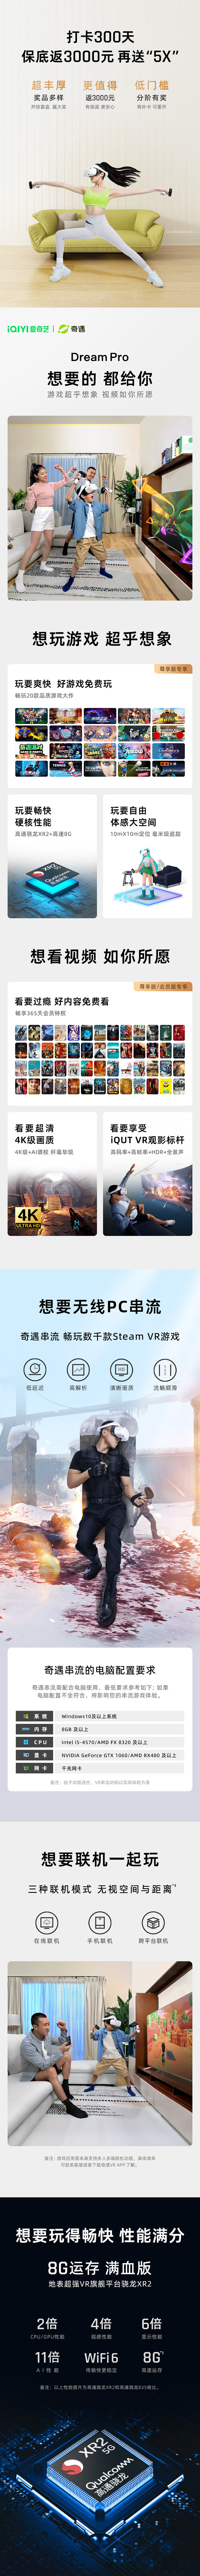 奇遇Dream Pro VR一体机免费试用,评测